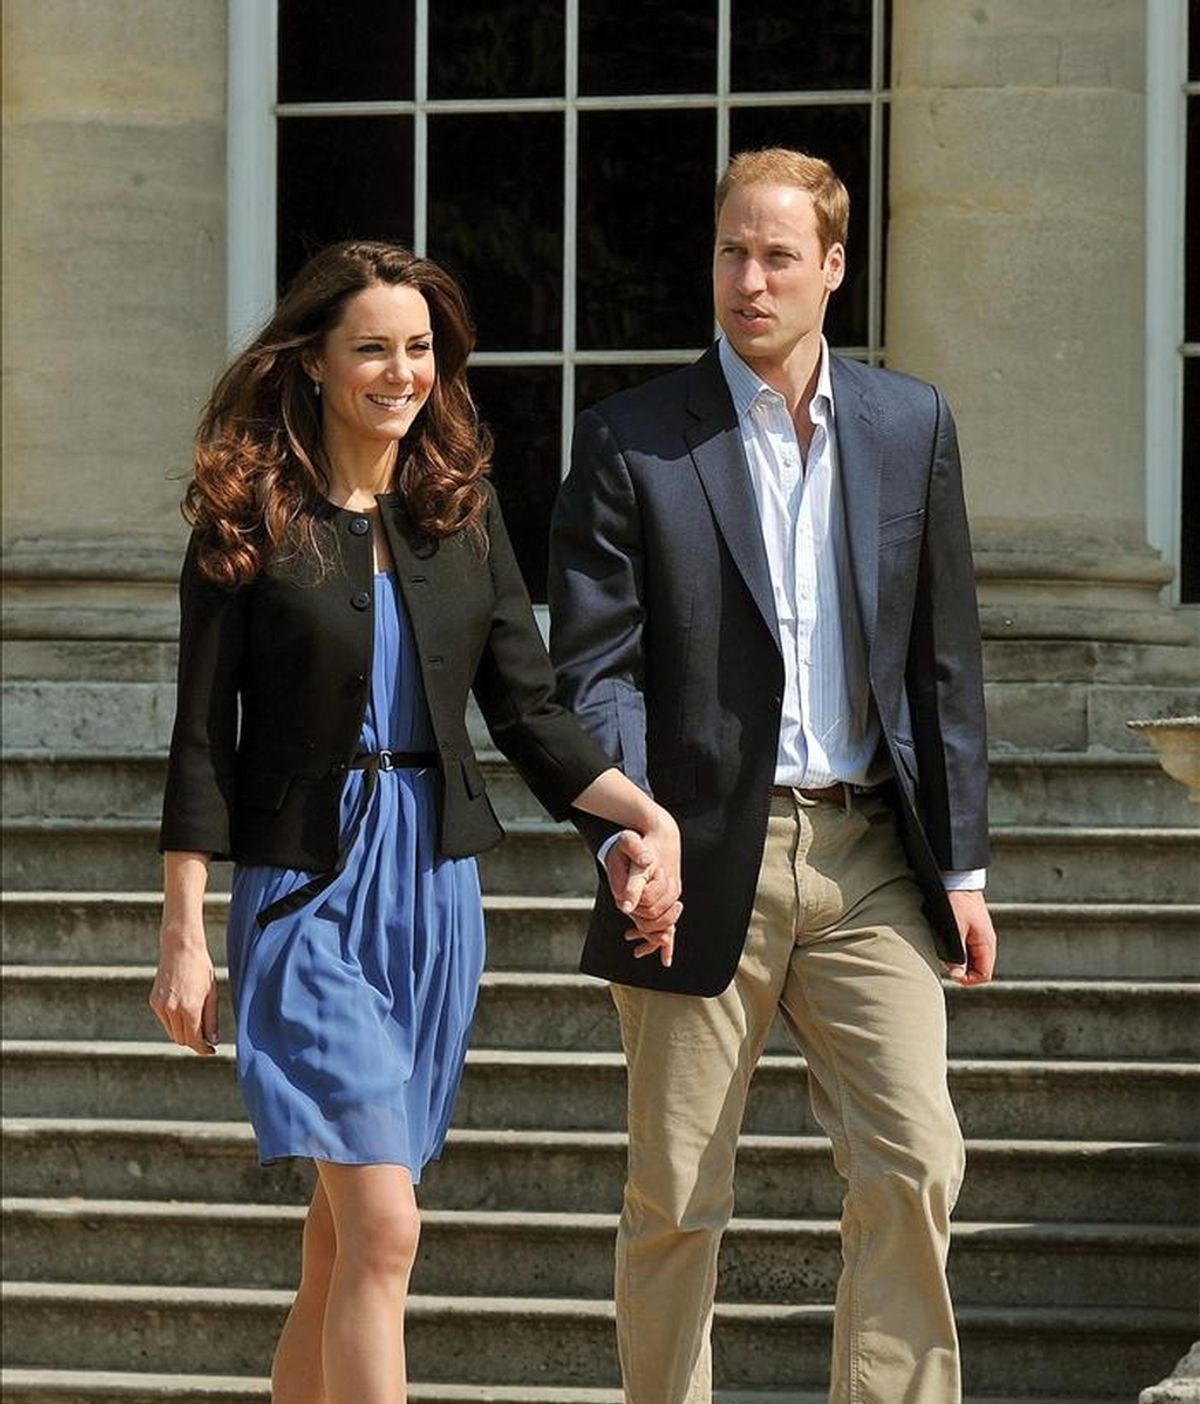 El príncipe Guillermo y Catalina, los nuevos duques de Cambridge, caminan agarrados de la mano el recinto del palacio de Buckingham, en Londres (Reino Unido), el pasado 30 de abril, un día después de su boda. EFE/Archivo